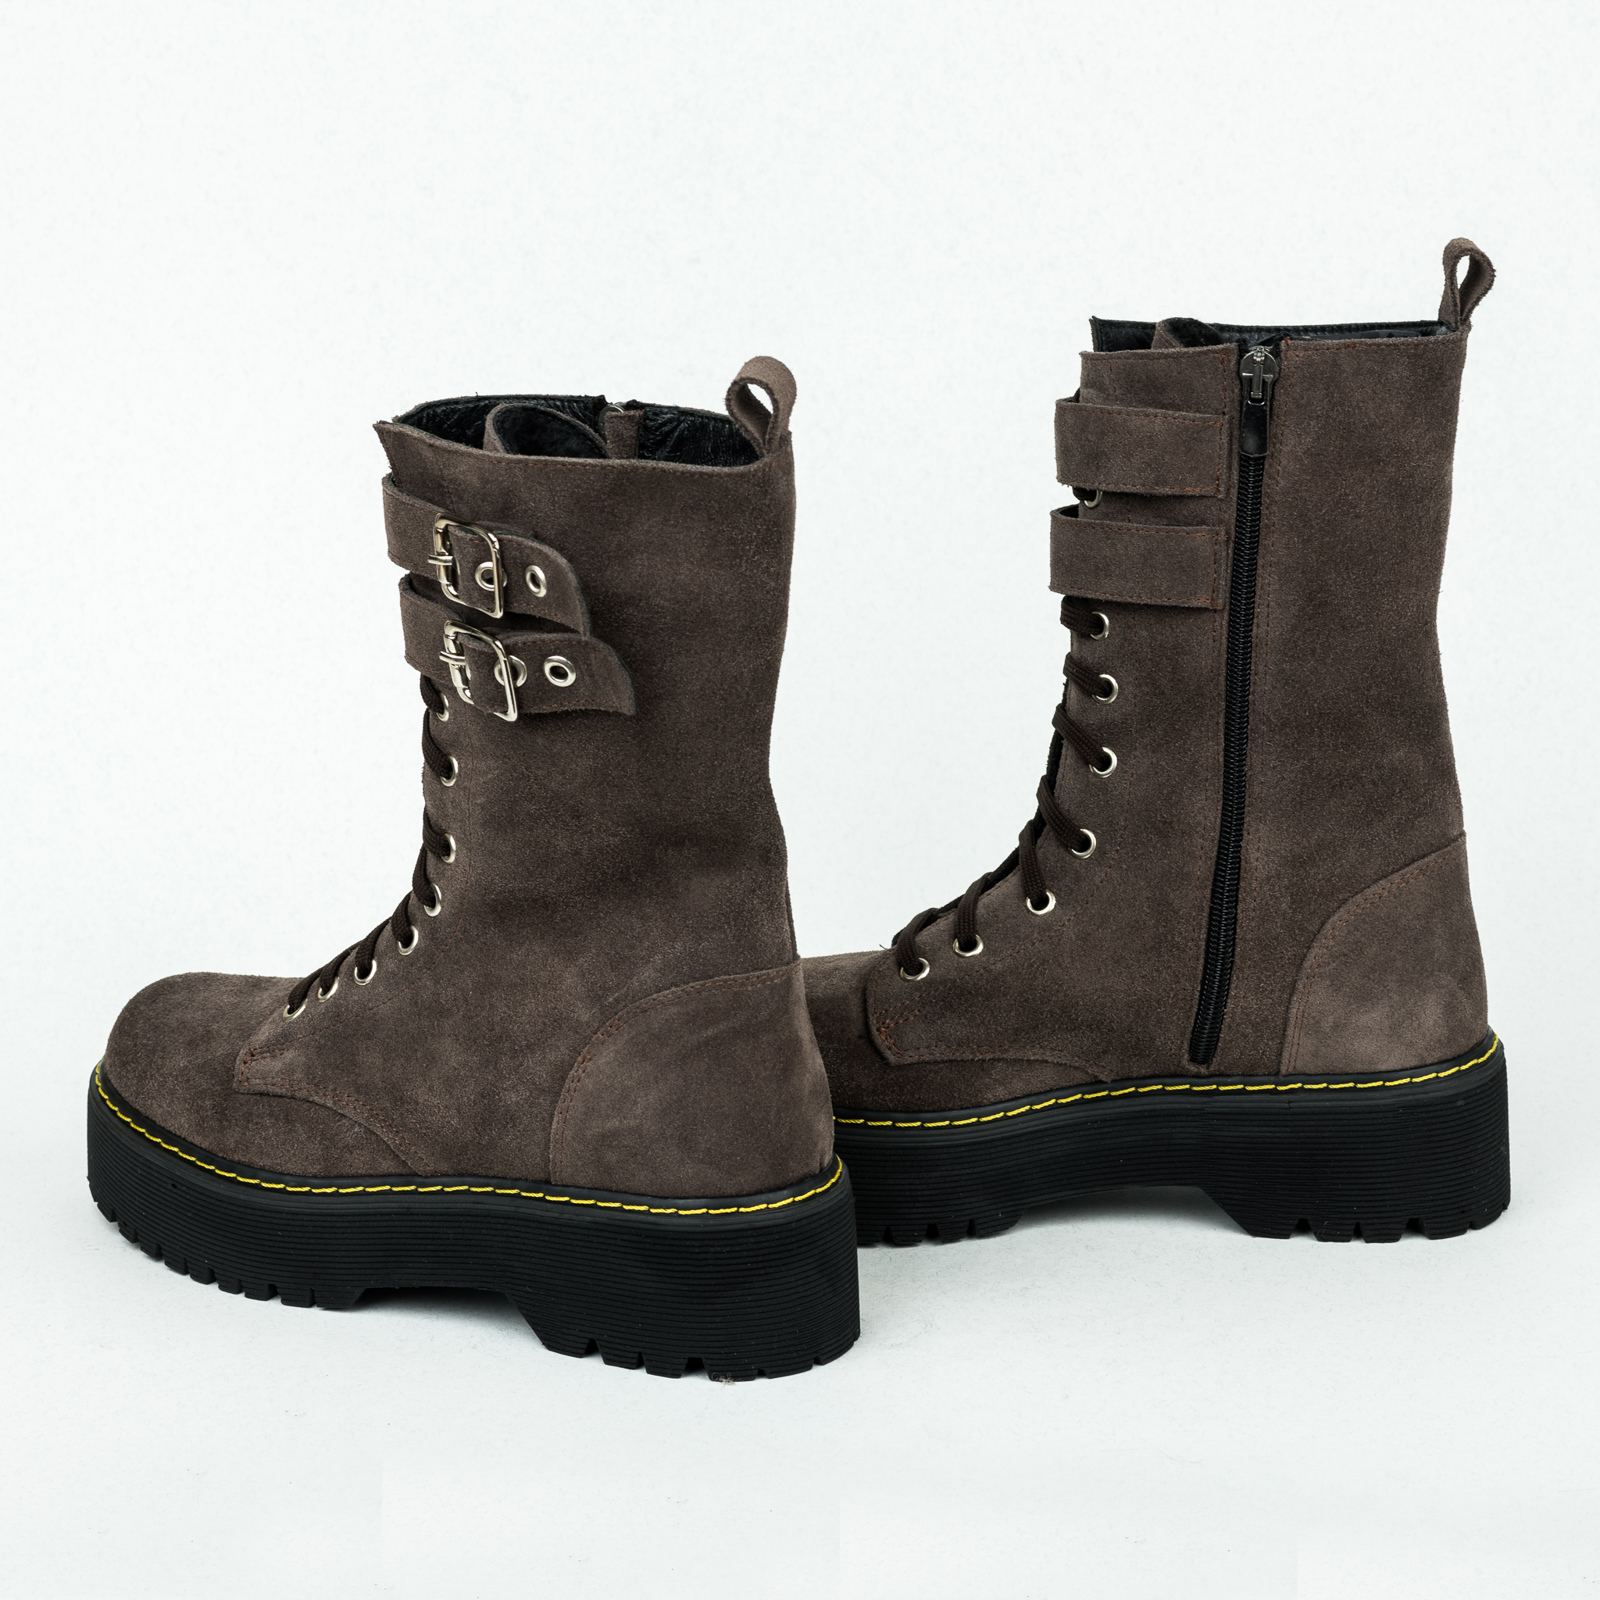 Leather WATERPROOF boots B203 - BEIGE